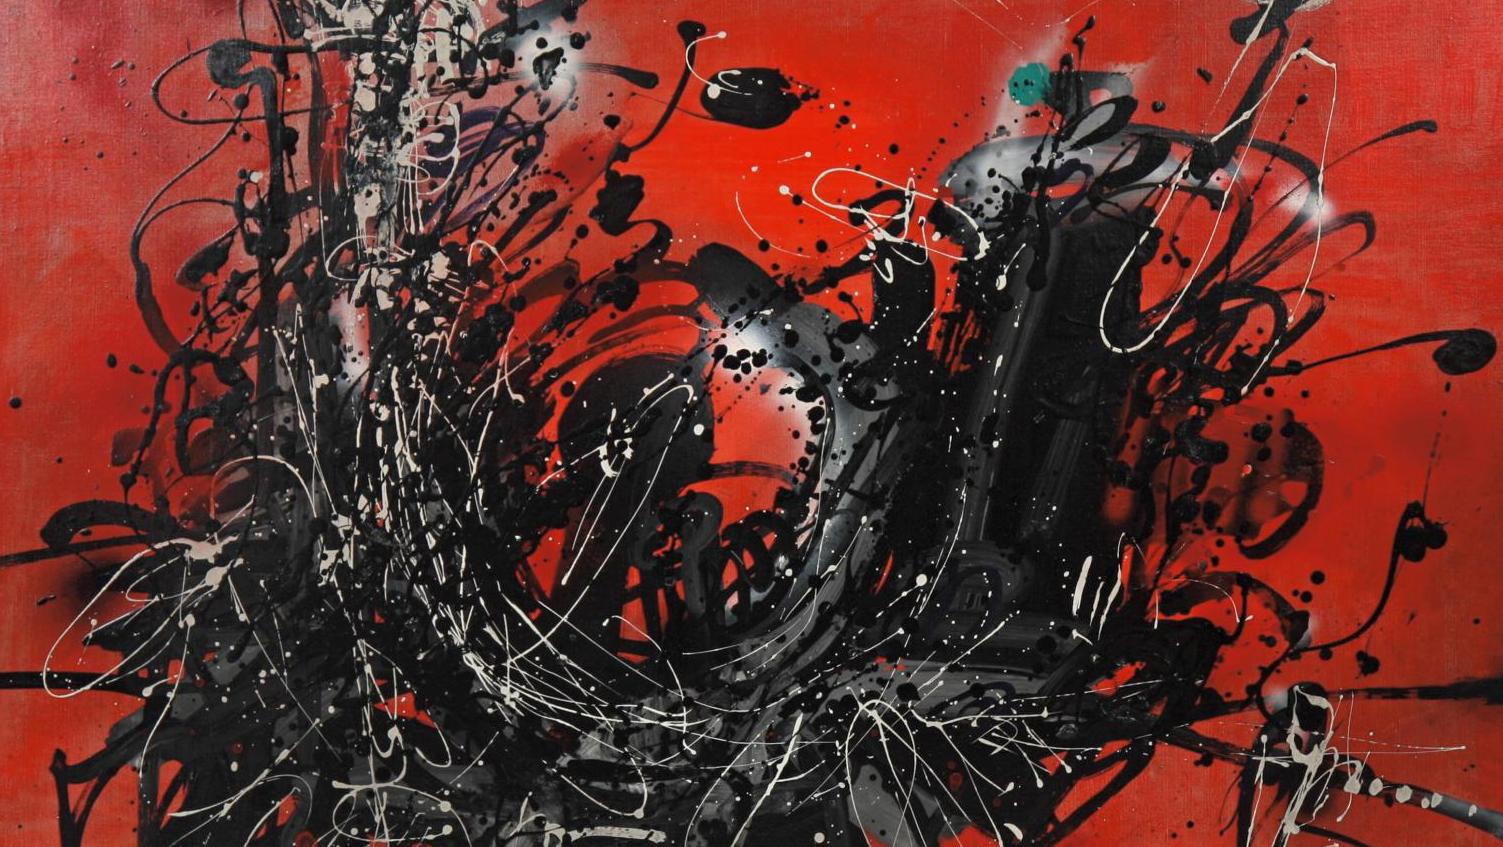 Ladislas Kijno (1921-2012), Abstraction rouge, huile sur toile, vers 1960, 90 x 117 cm.... En rouge et gris, lyrique Ladislas Kijno